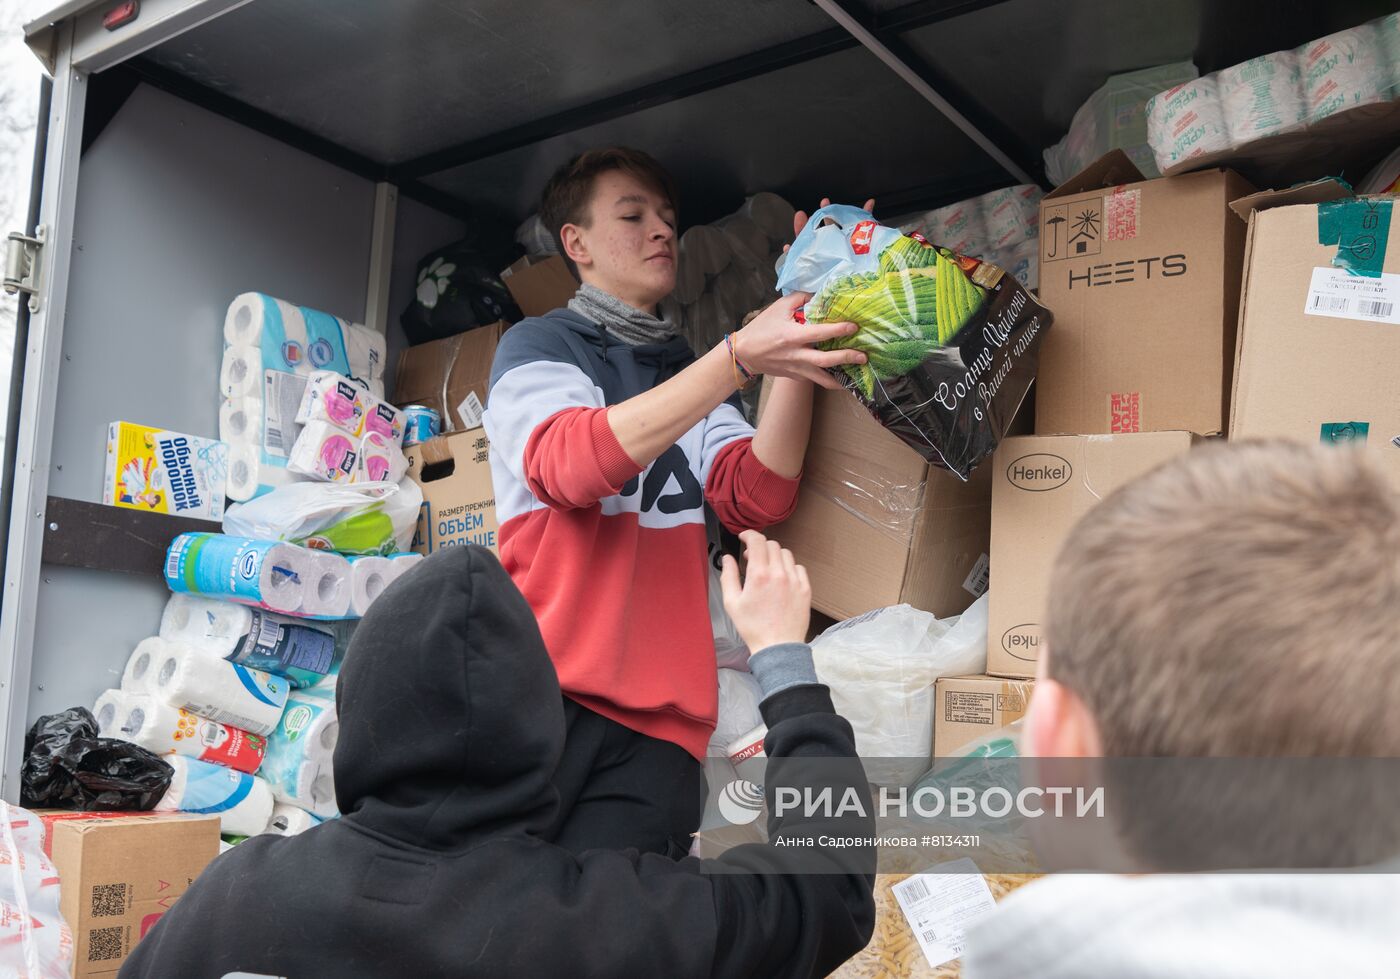 Сбор гуманитарной помощи для жителей Донецкой и Луганской народных республик